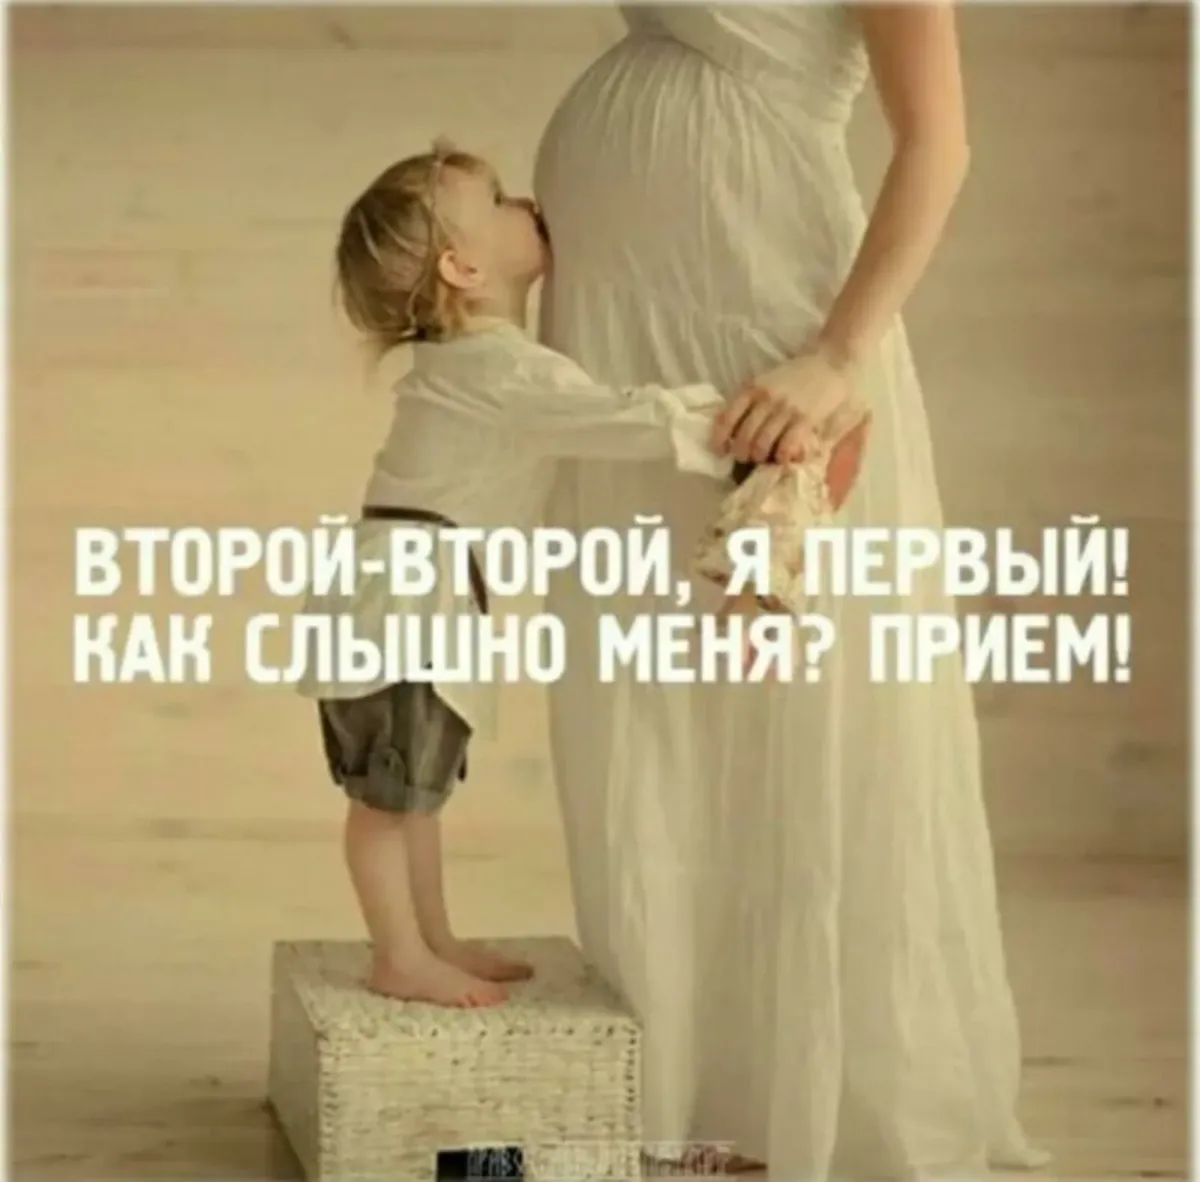 Мама я тоже стану мамой. В ожидании ребенка цитаты. Цитаты про беременность. Беременность цитаты красивые. Цитаты для беременных.